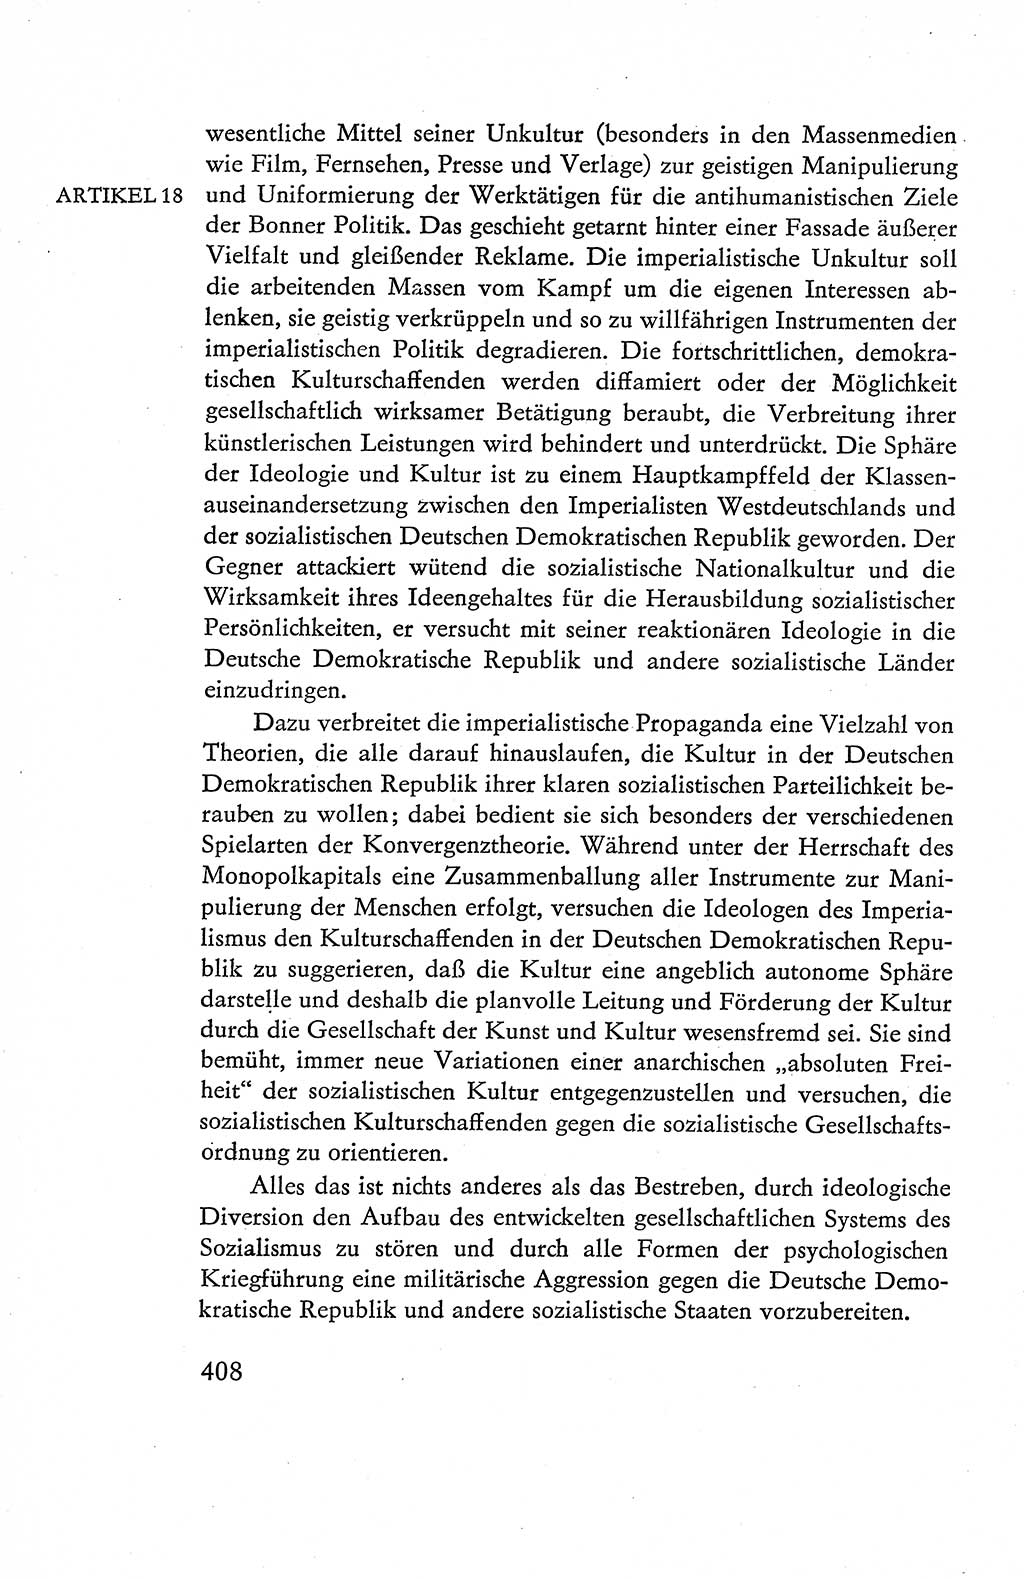 Verfassung der Deutschen Demokratischen Republik (DDR), Dokumente, Kommentar 1969, Band 1, Seite 408 (Verf. DDR Dok. Komm. 1969, Bd. 1, S. 408)